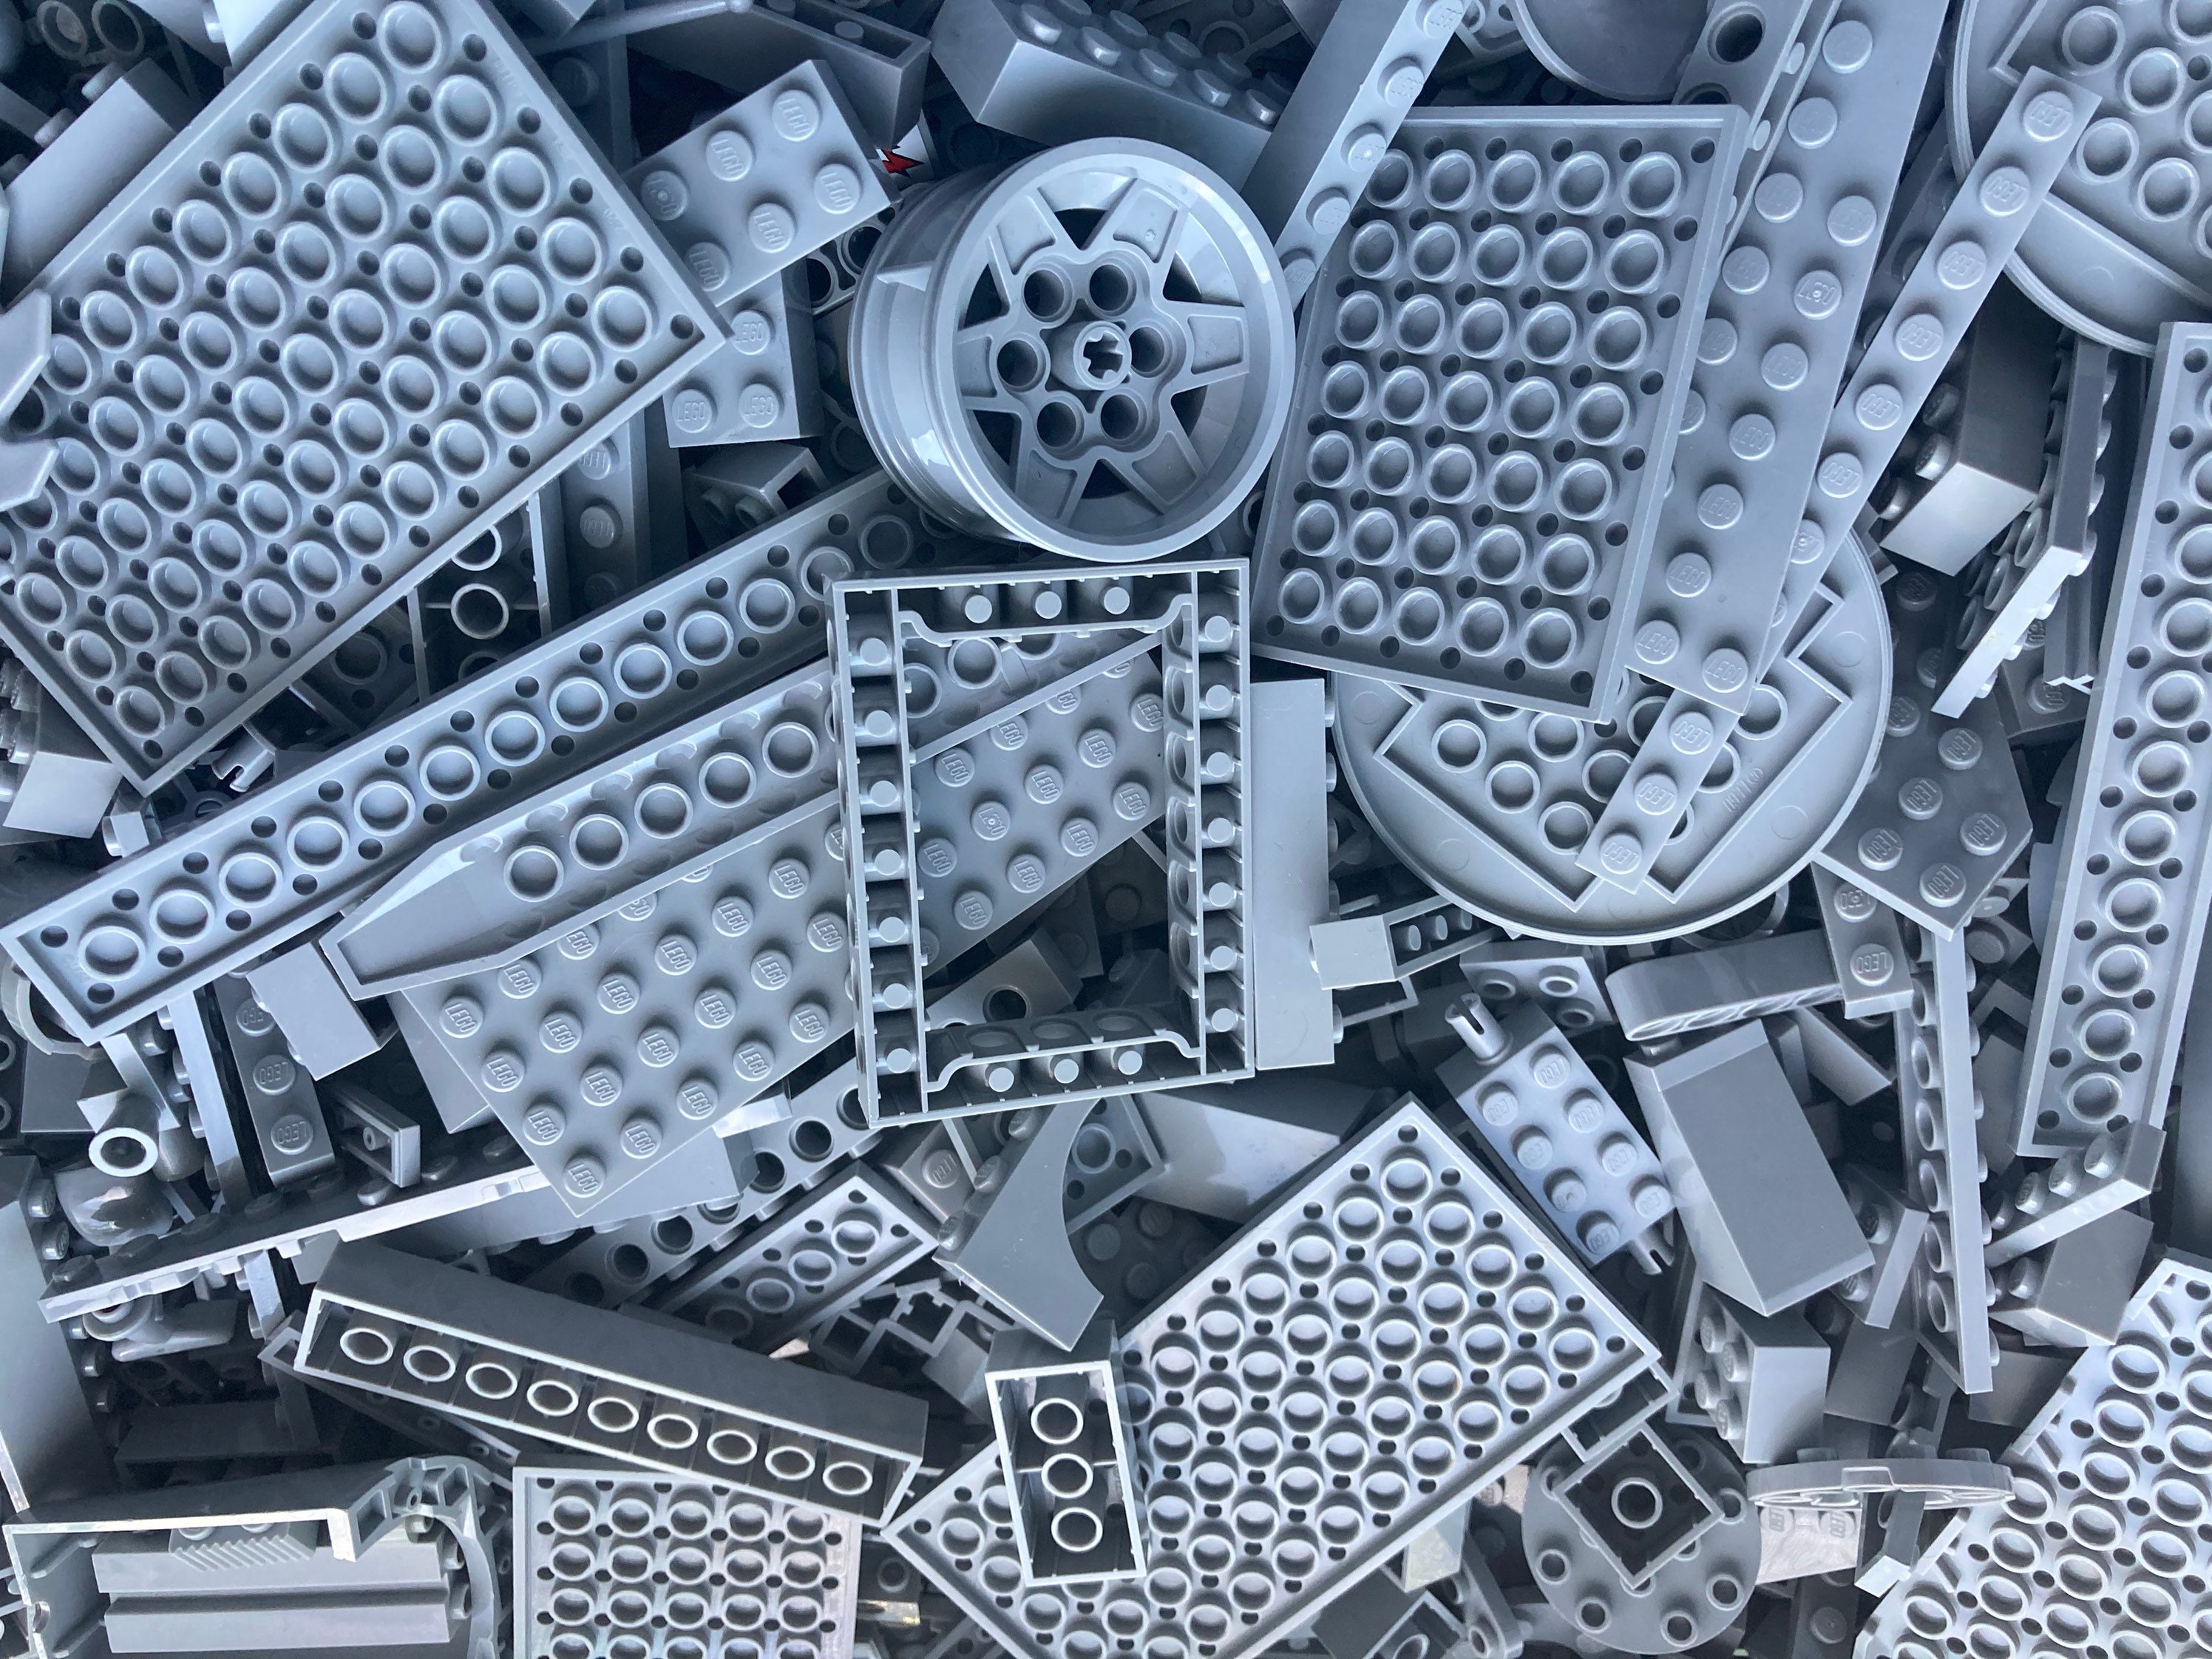 gray lego brick